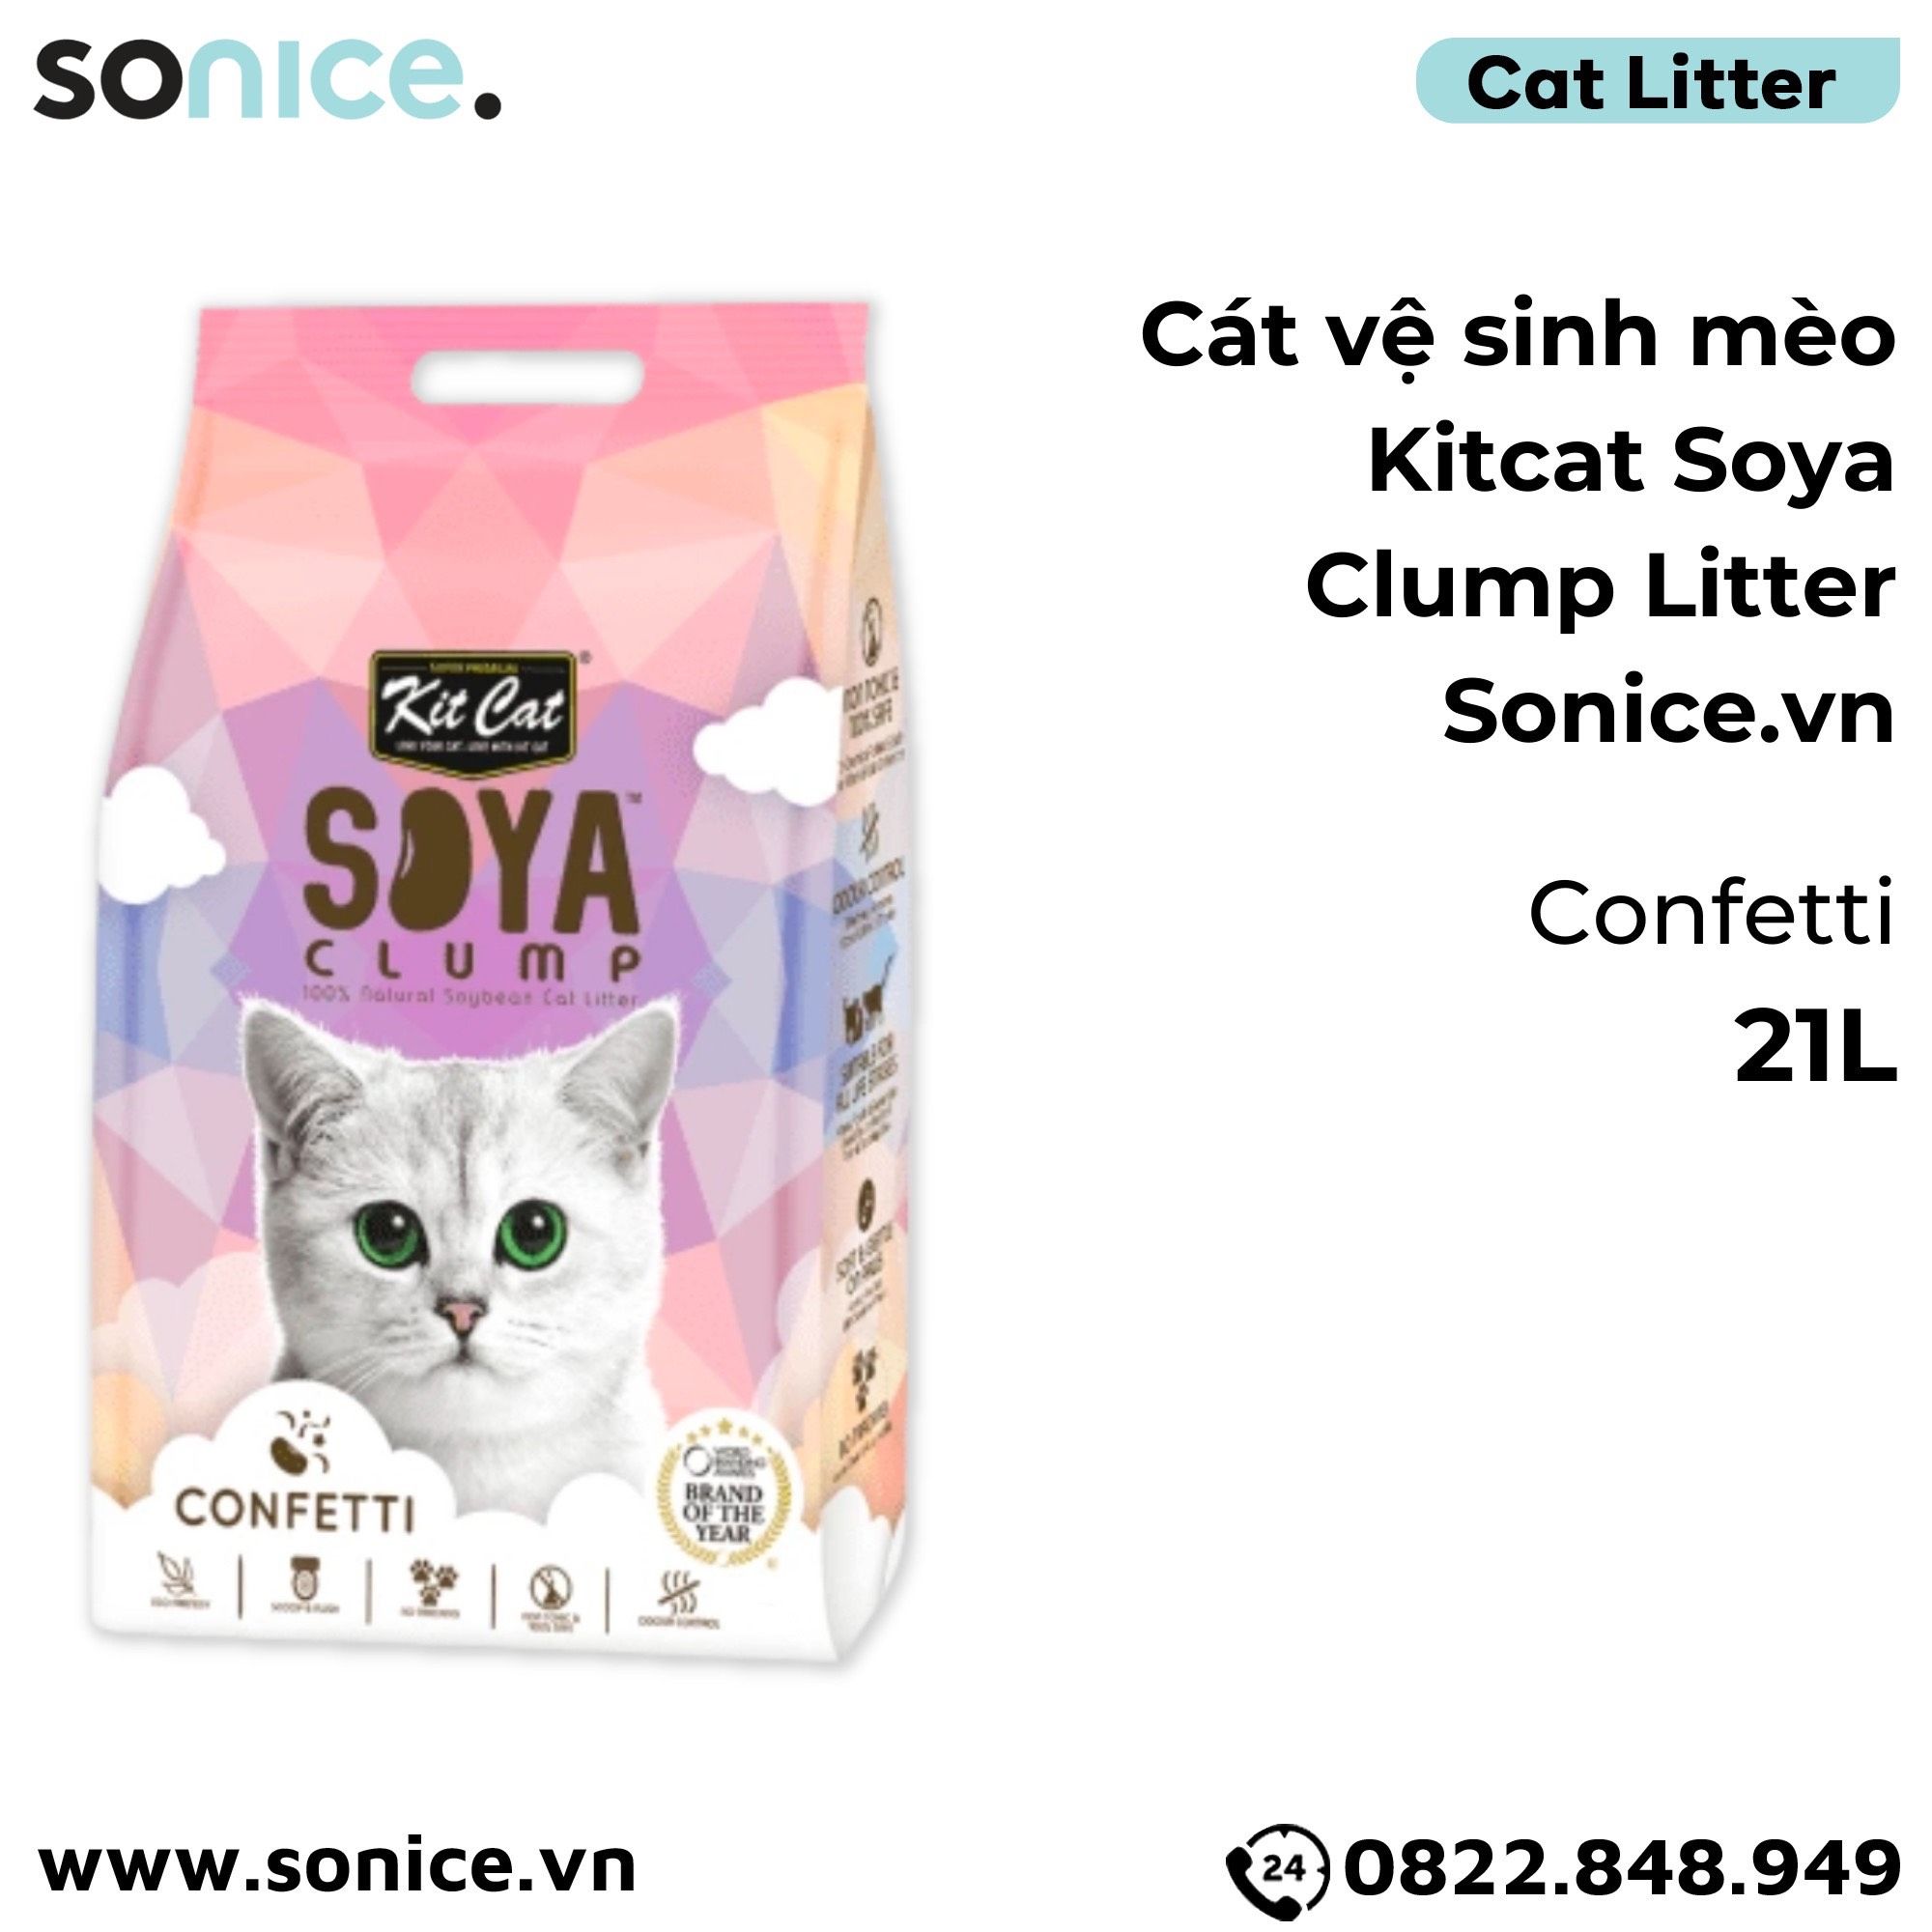  Cát vệ sinh mèo Kit Cat Soya Clump Litter 21L - Làm từ đậu nành tofu SONICE. 